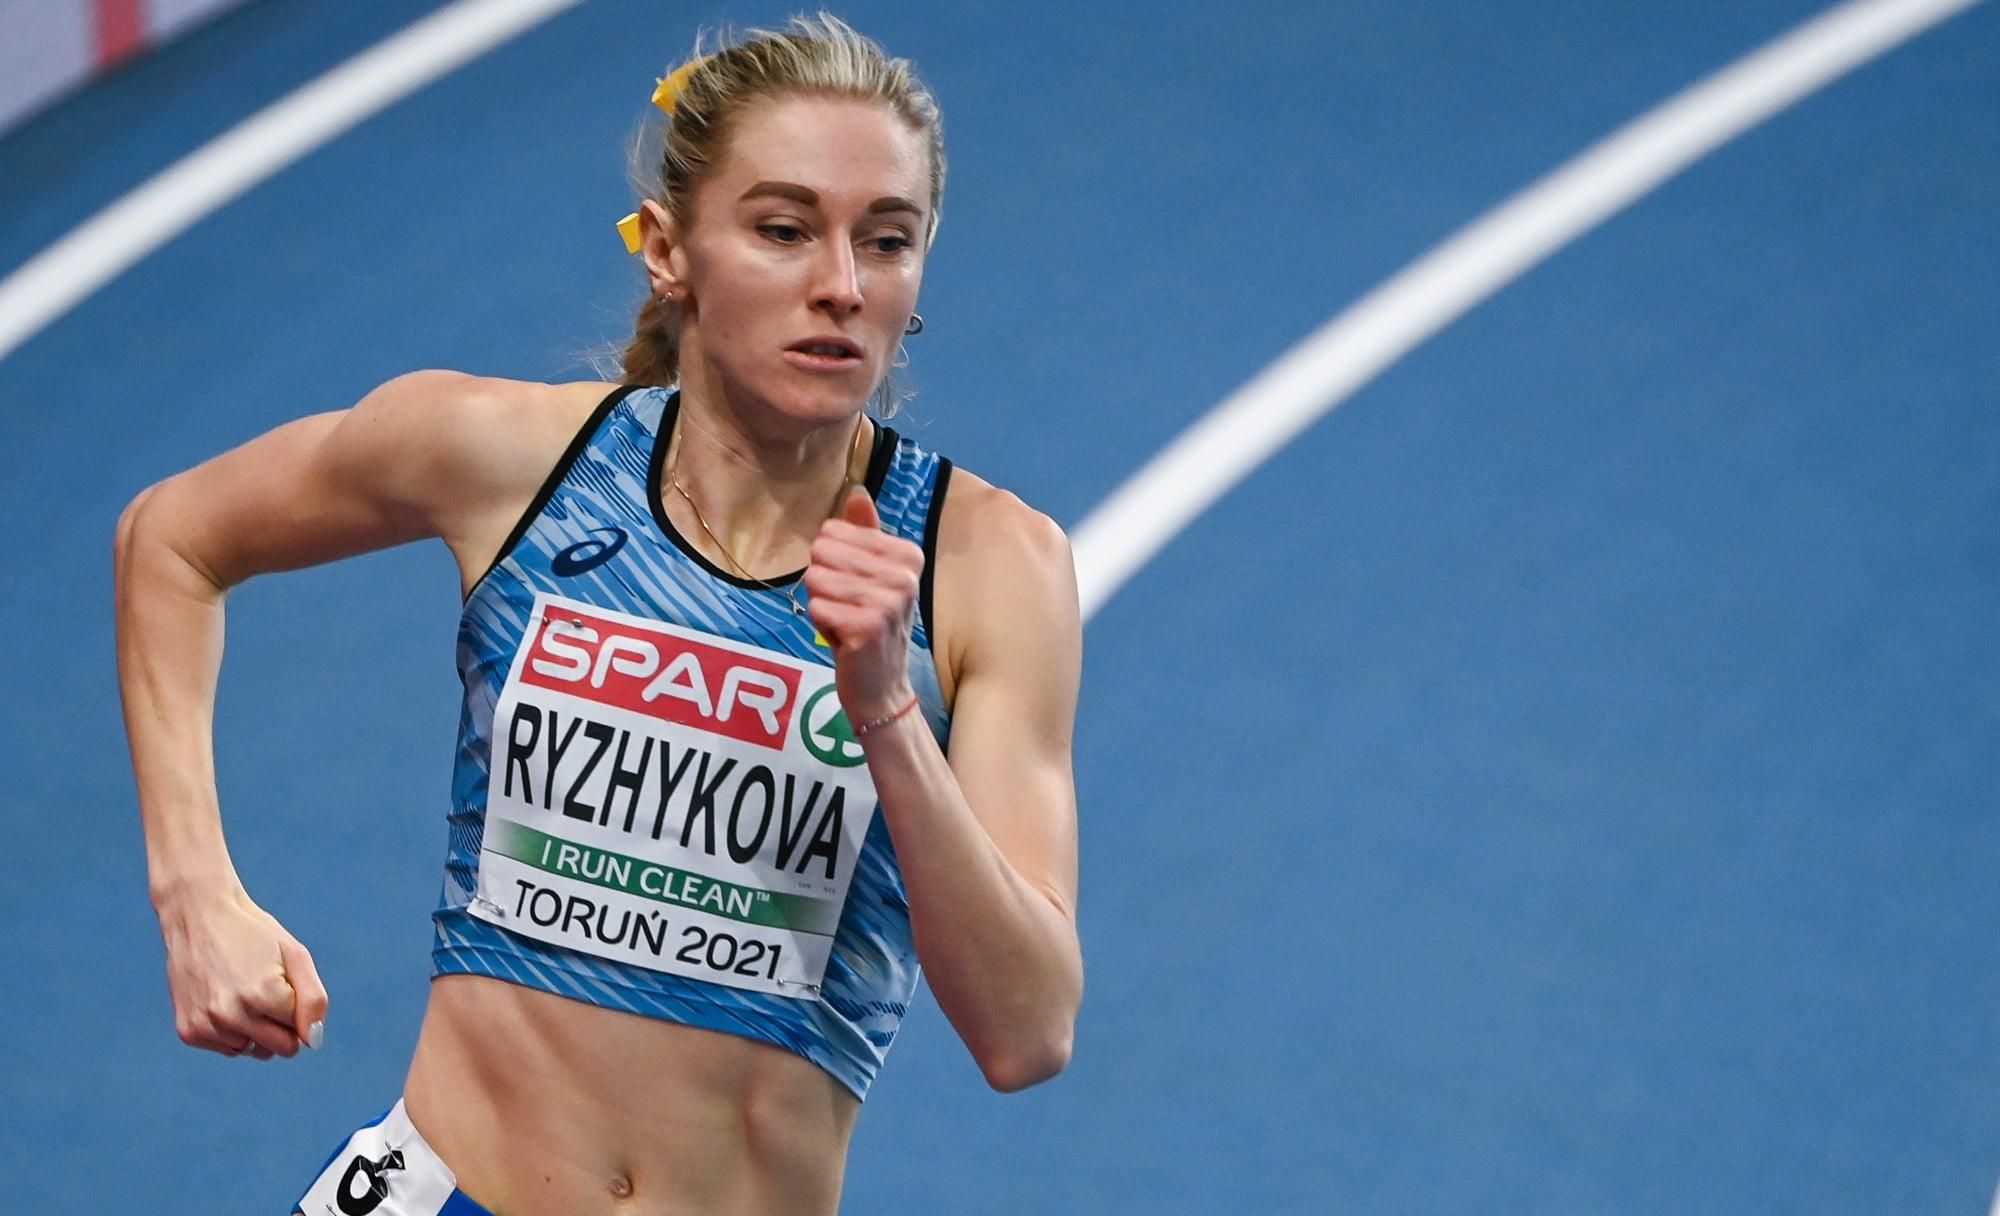 Анна Рыжикова выиграла серебро на первом международном старте сезона